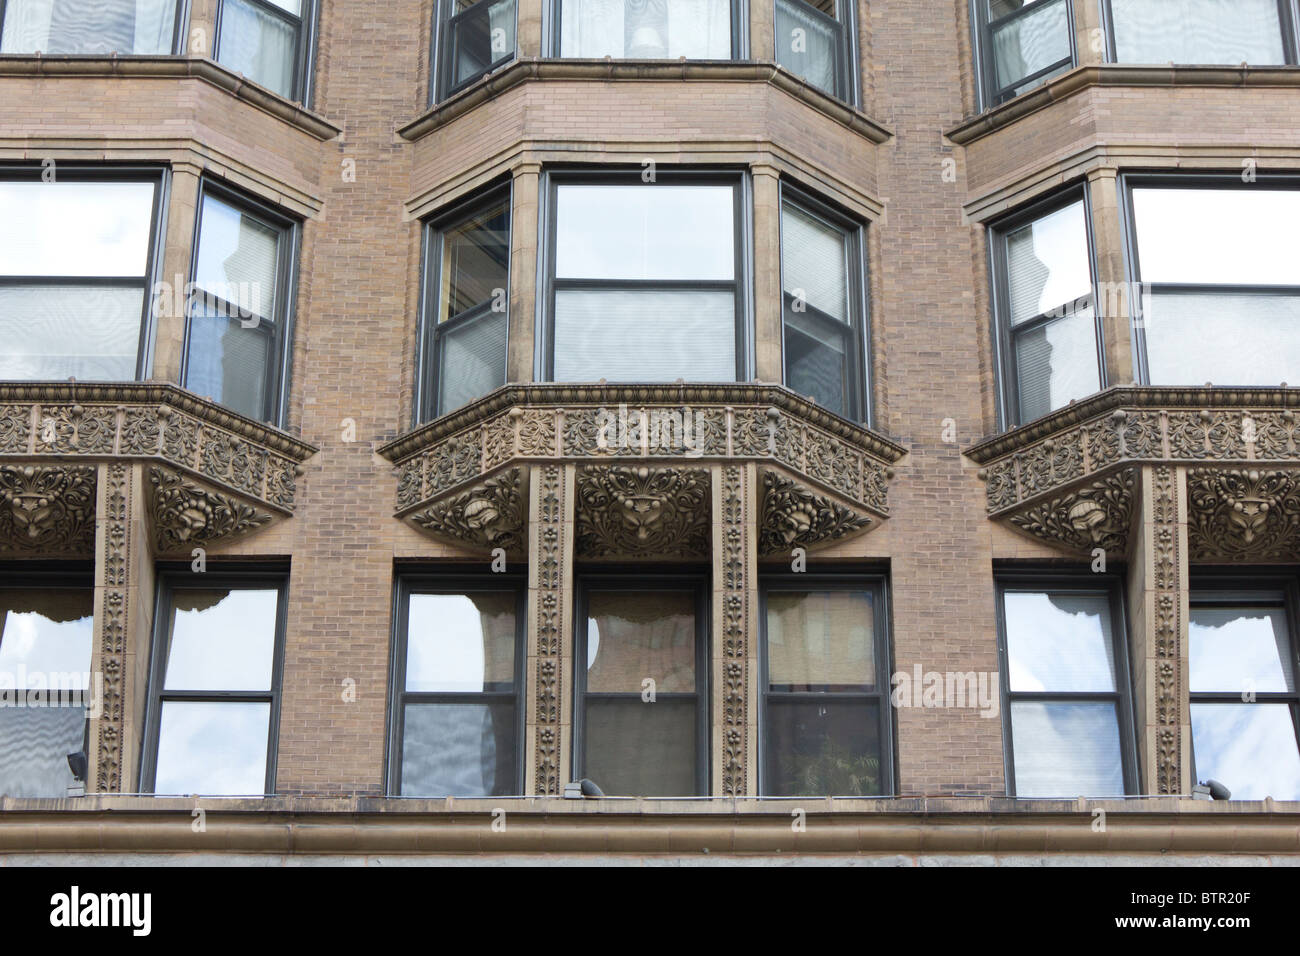 Detalle de la fachada del edificio de Manhattan, 431 South Dearborn Street, Chicago, Illinois, EE.UU. Foto de stock